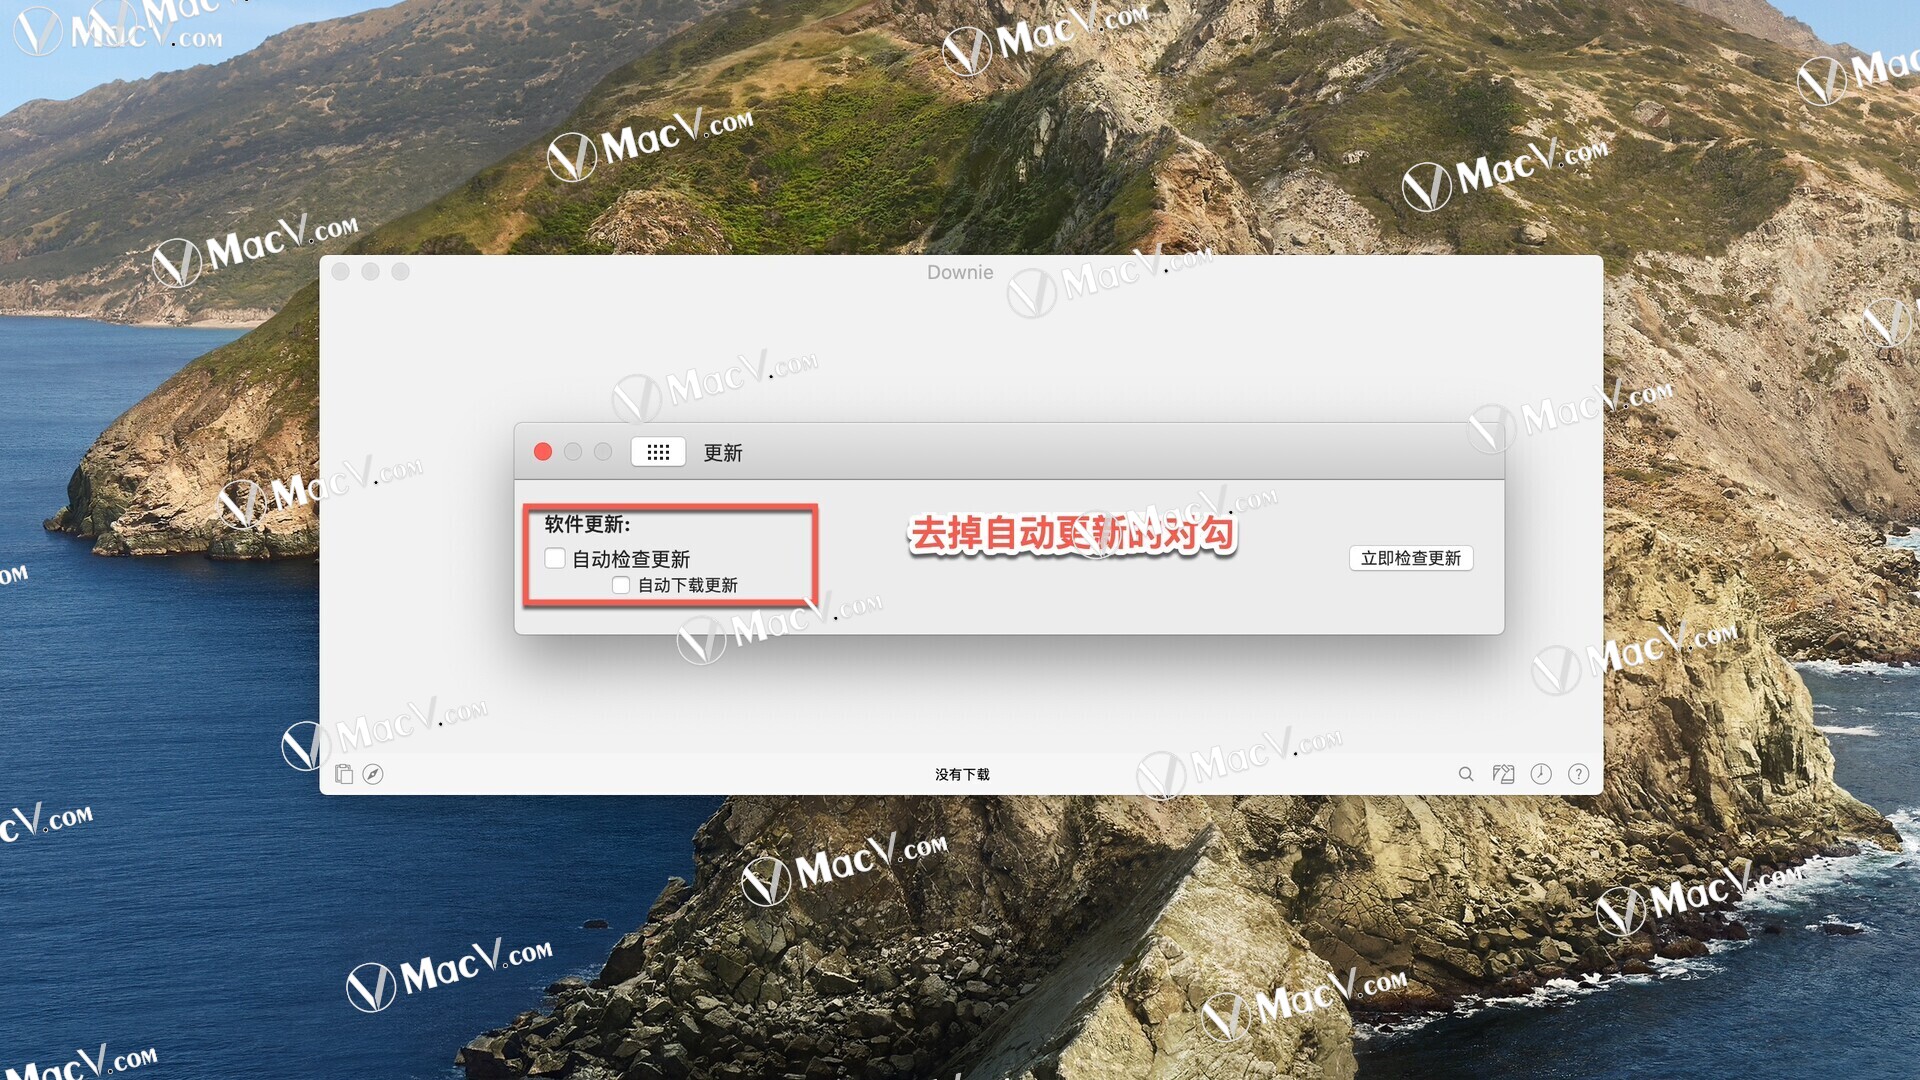 Downie 4 for Mac(视频下载工具) v4.5.11中文版